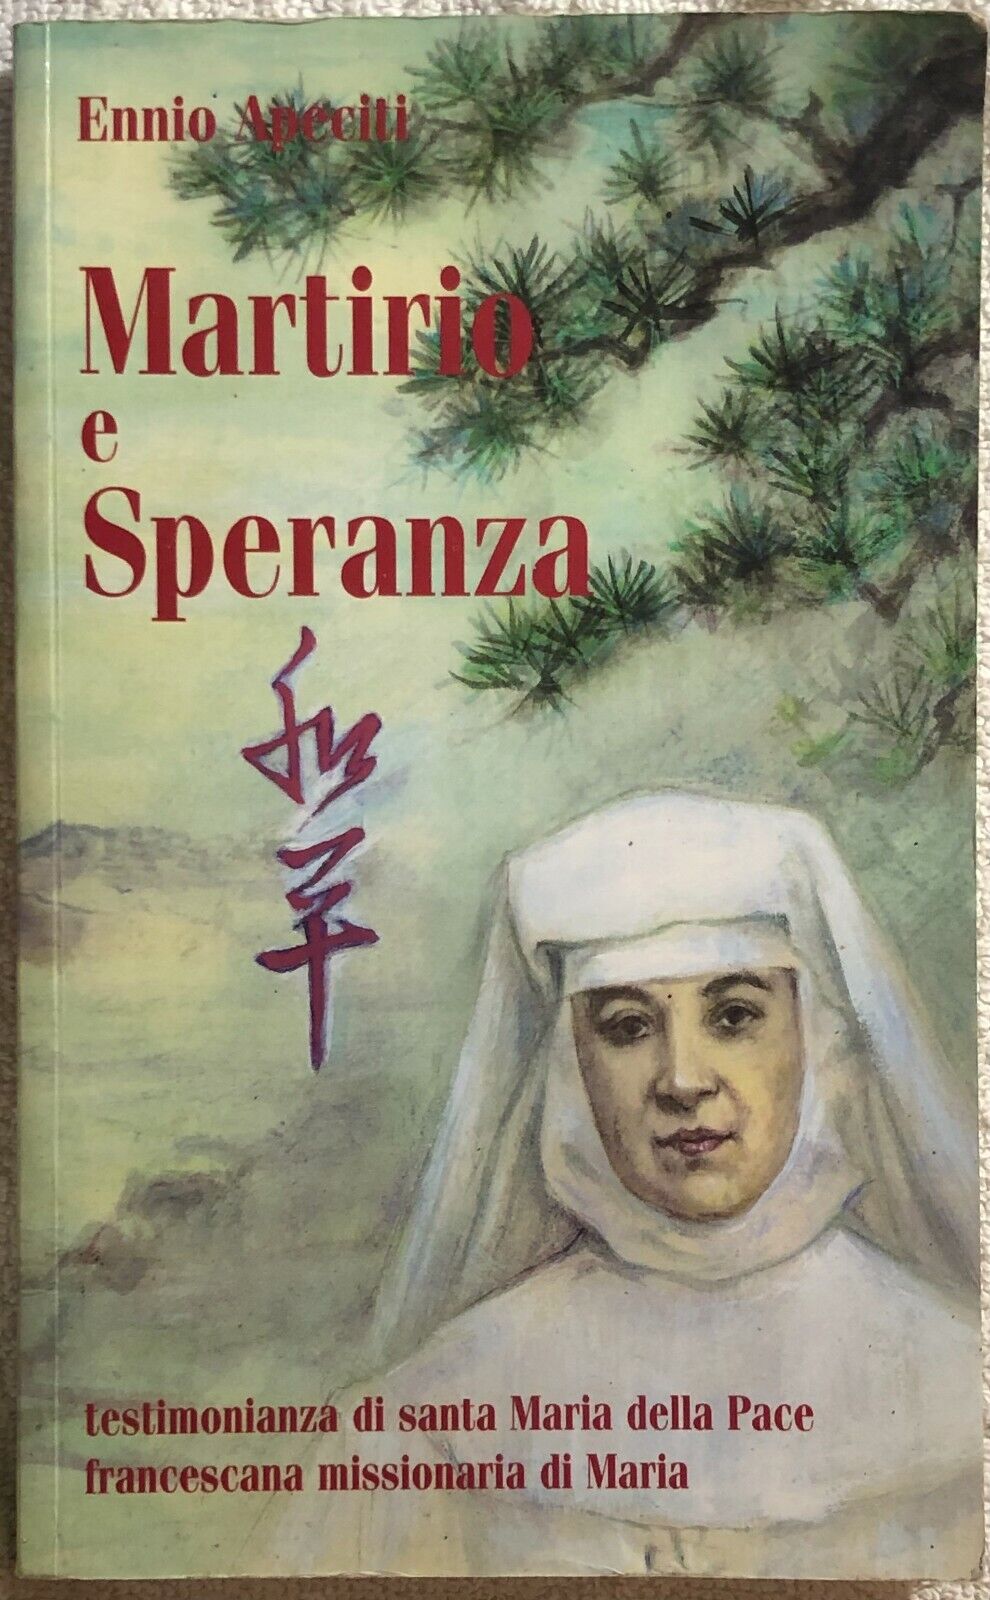 Martirio e speranza di Ennio Apeciti,  2000,  Francescane Missionarie Di Maria